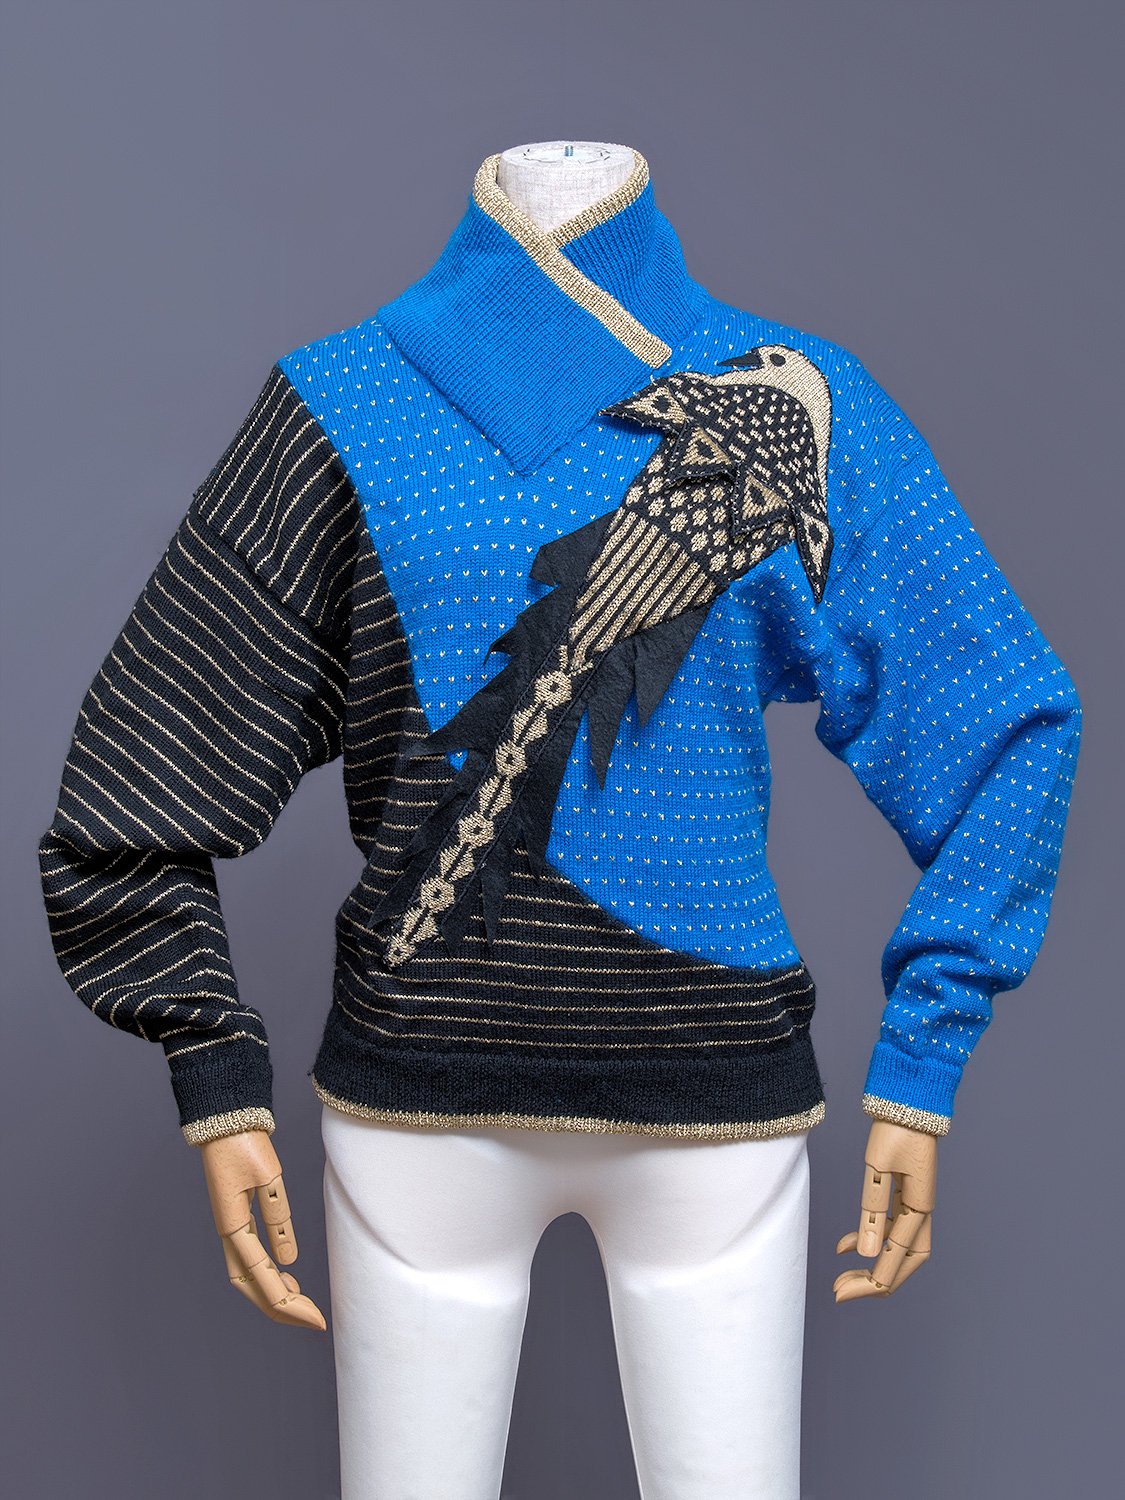 Kansai Yamamoto Knit Sweater